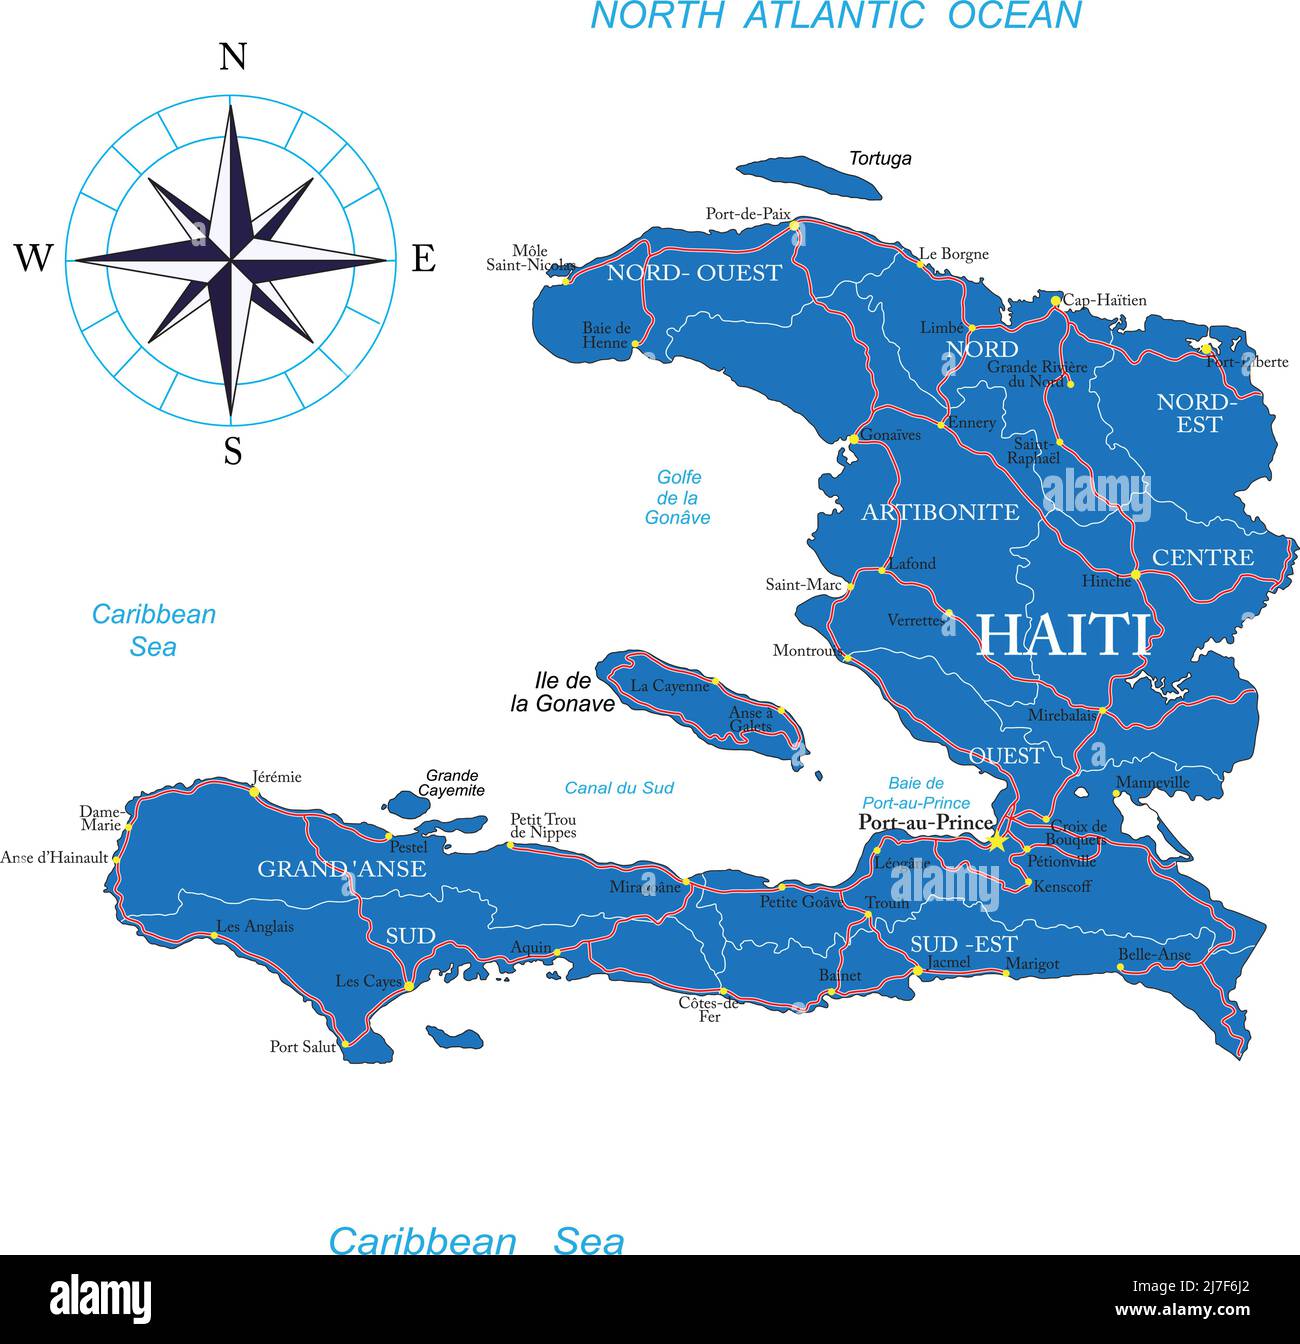 Carte vectorielle très détaillée d'Haïti avec régions administratives, principales villes et routes. Illustration de Vecteur